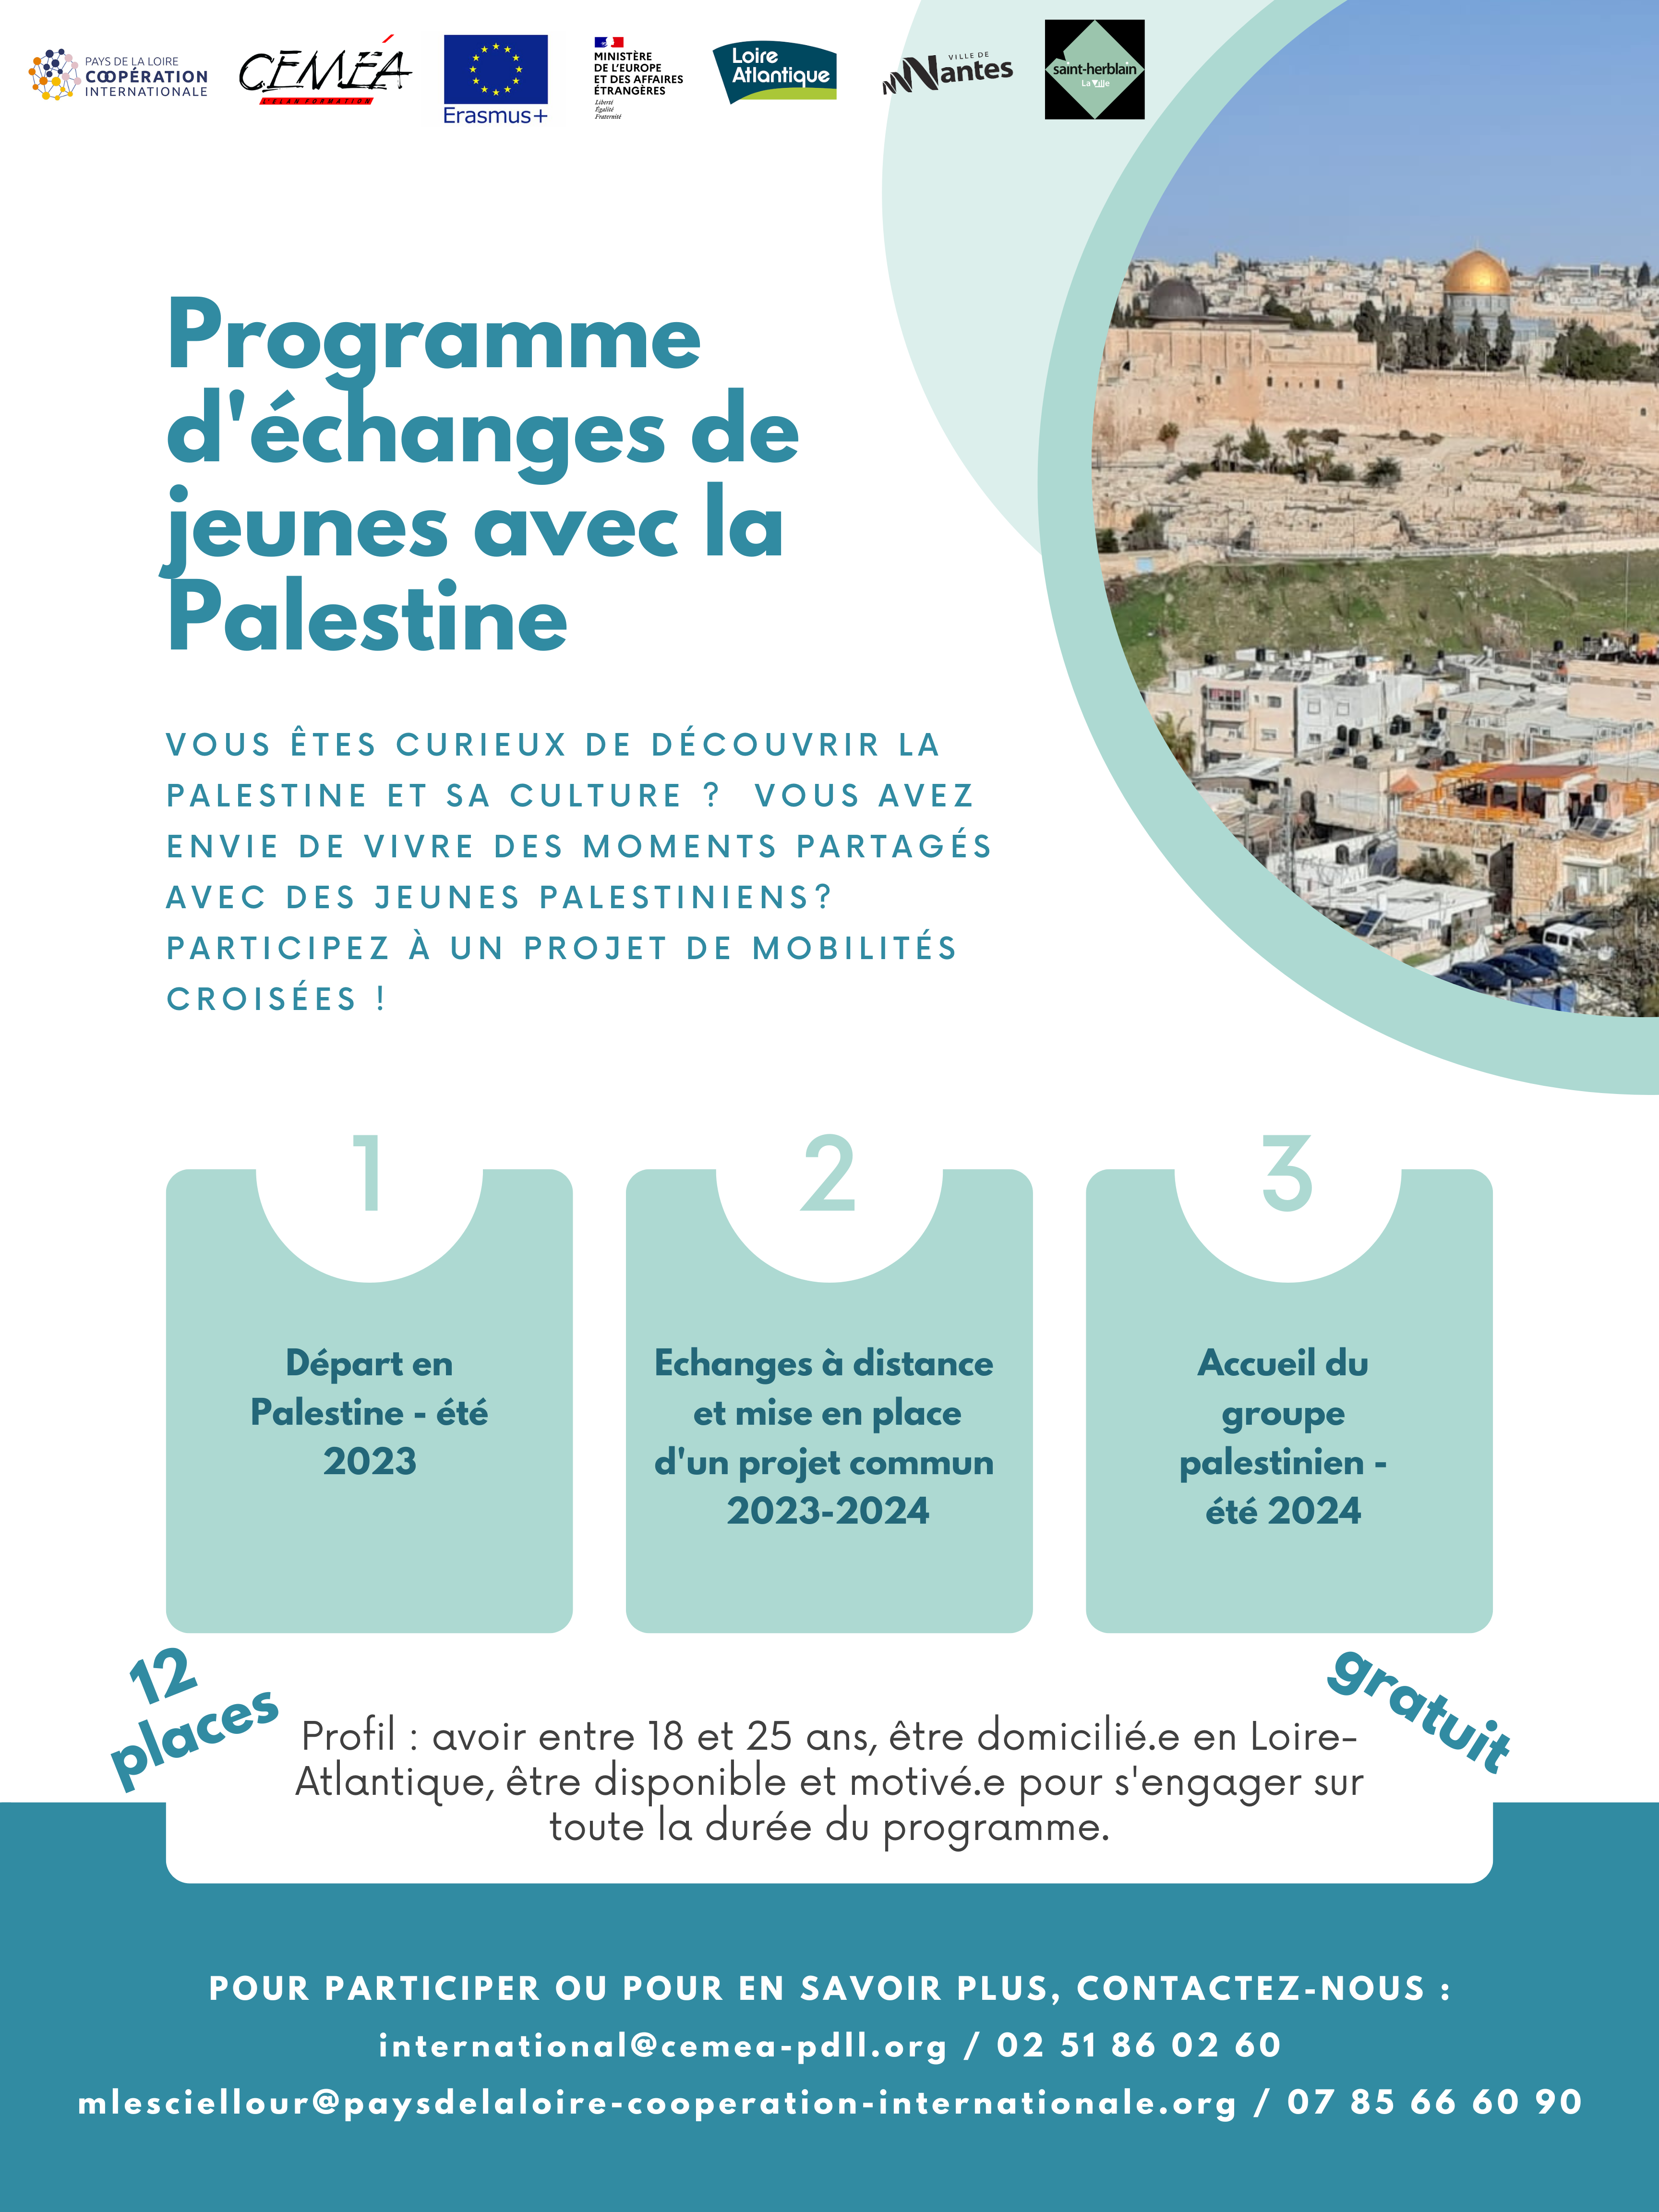 Partez en Palestine, participez à un programme d'échange (gratuit)